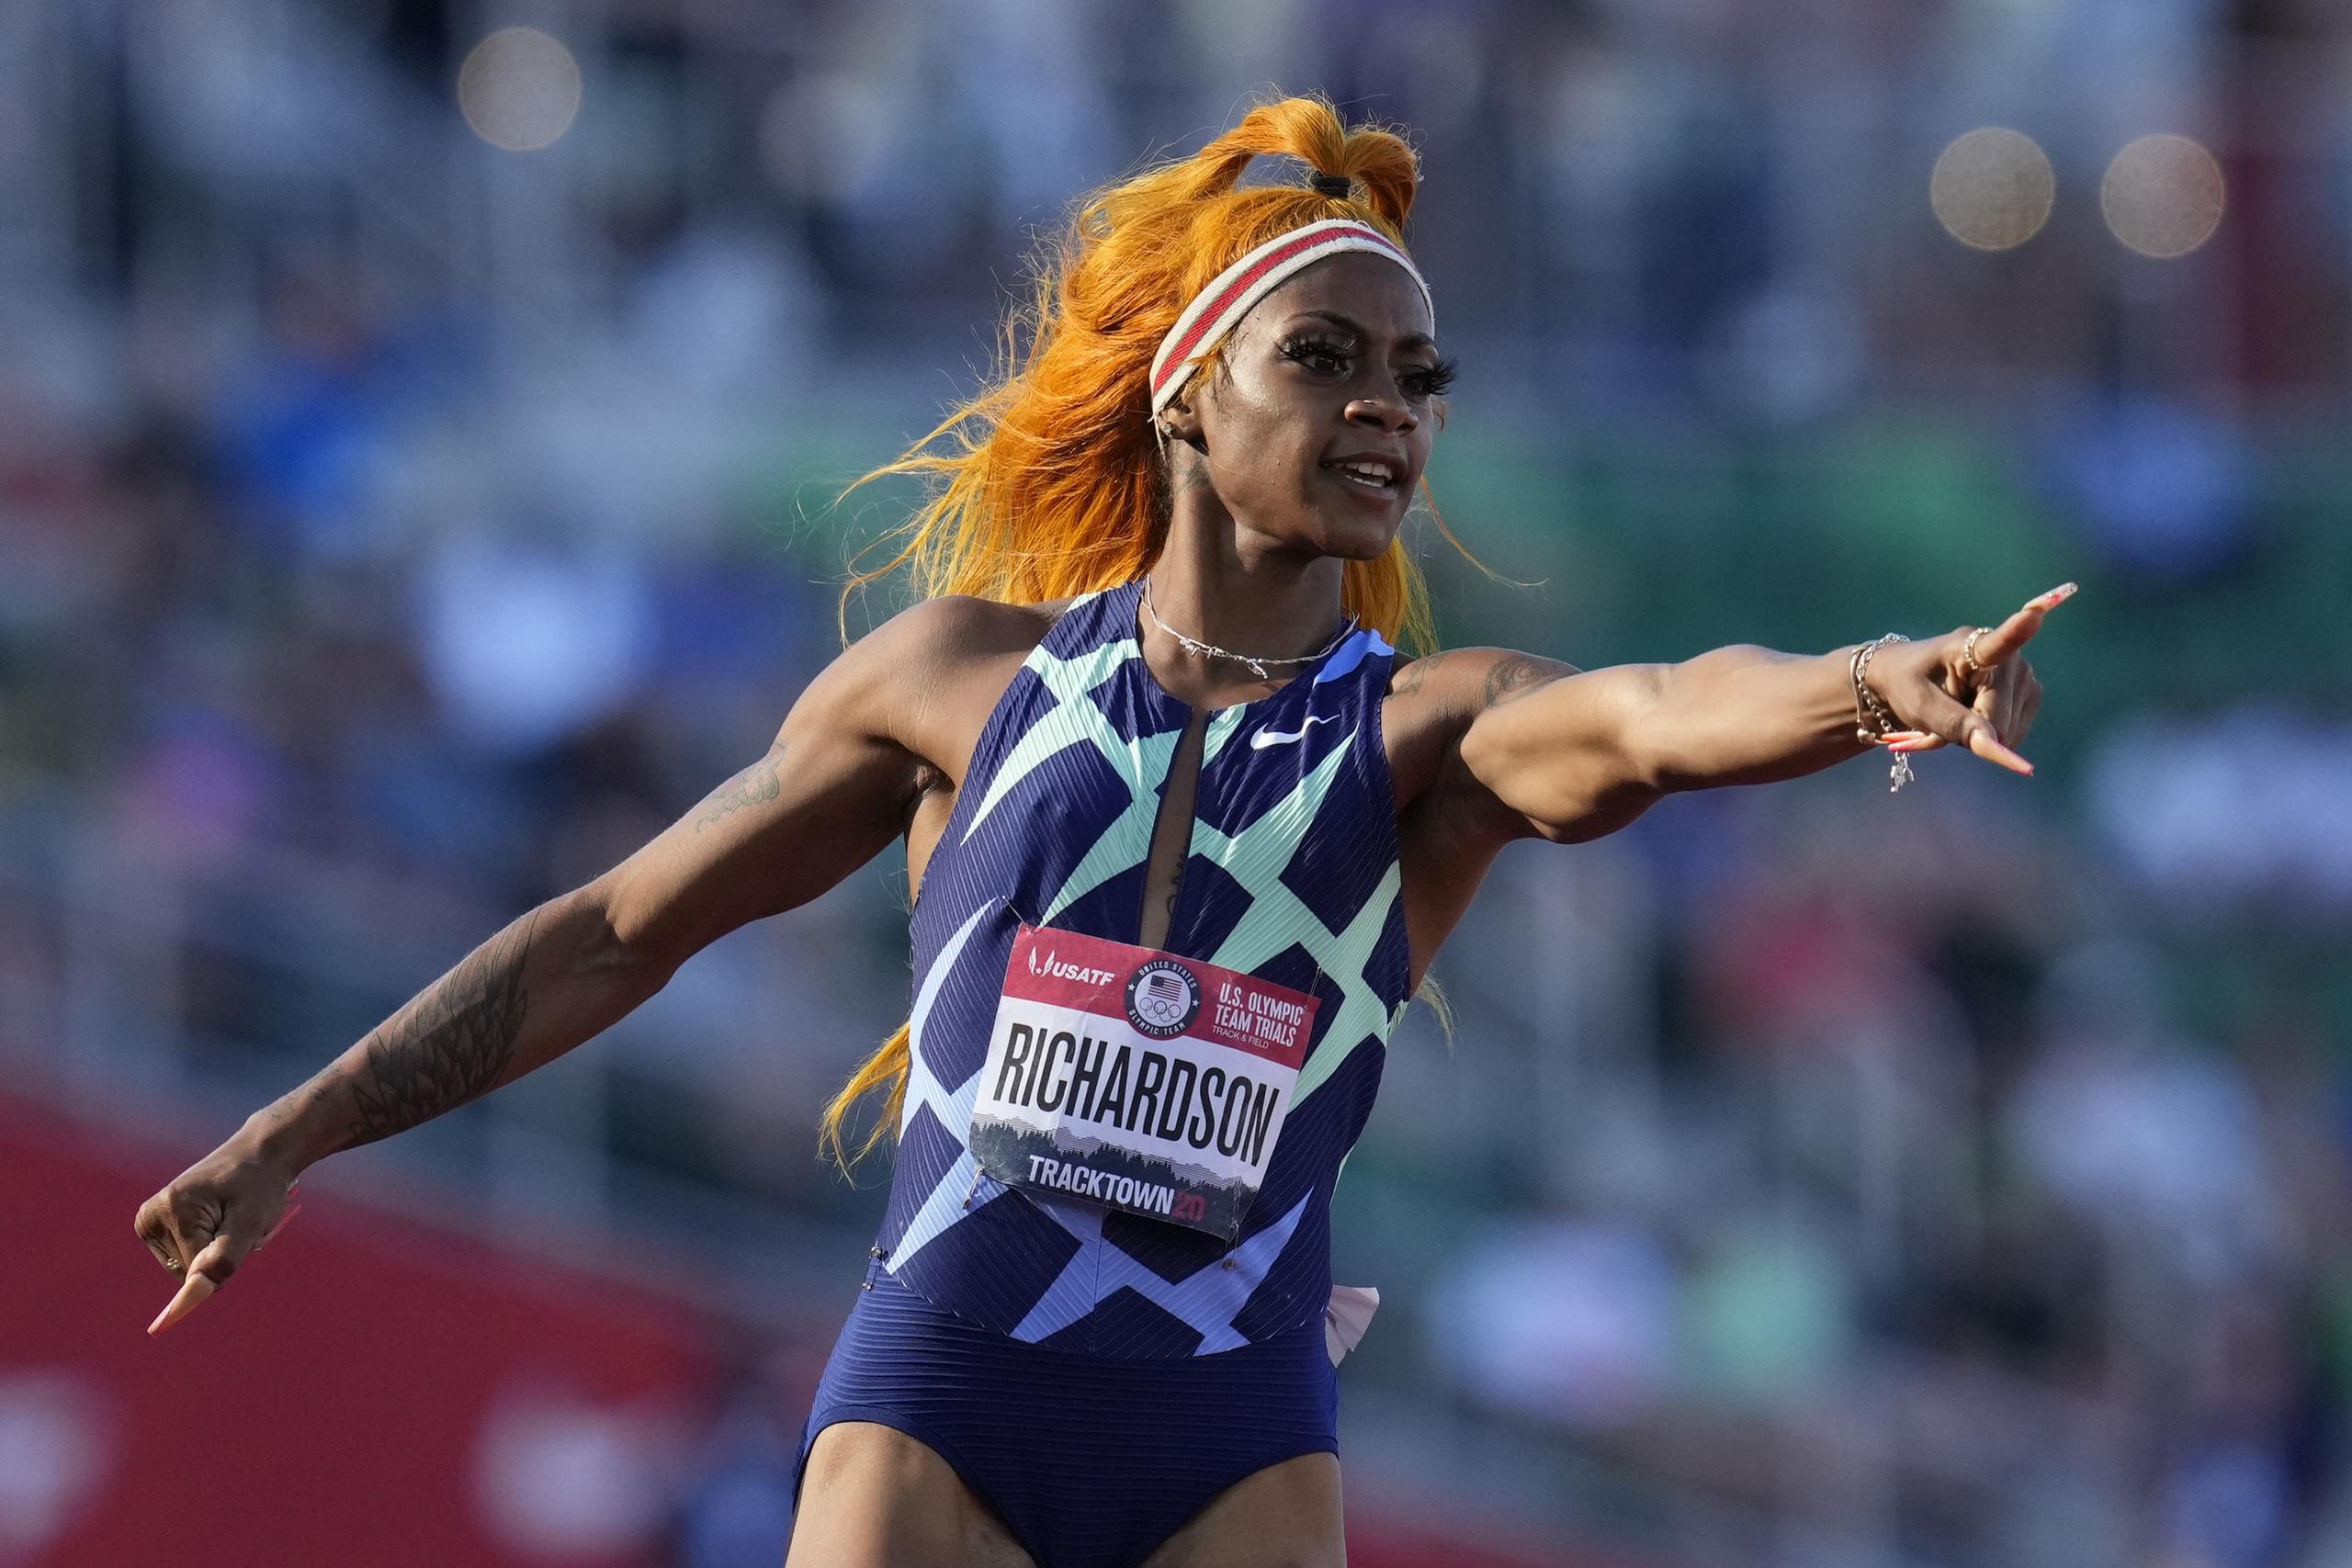 La atleta estadounidense de 21 años atrapó una plaza en los Juegos Olímpicos y el título nacional, marcando 10.86 segundos en la final.